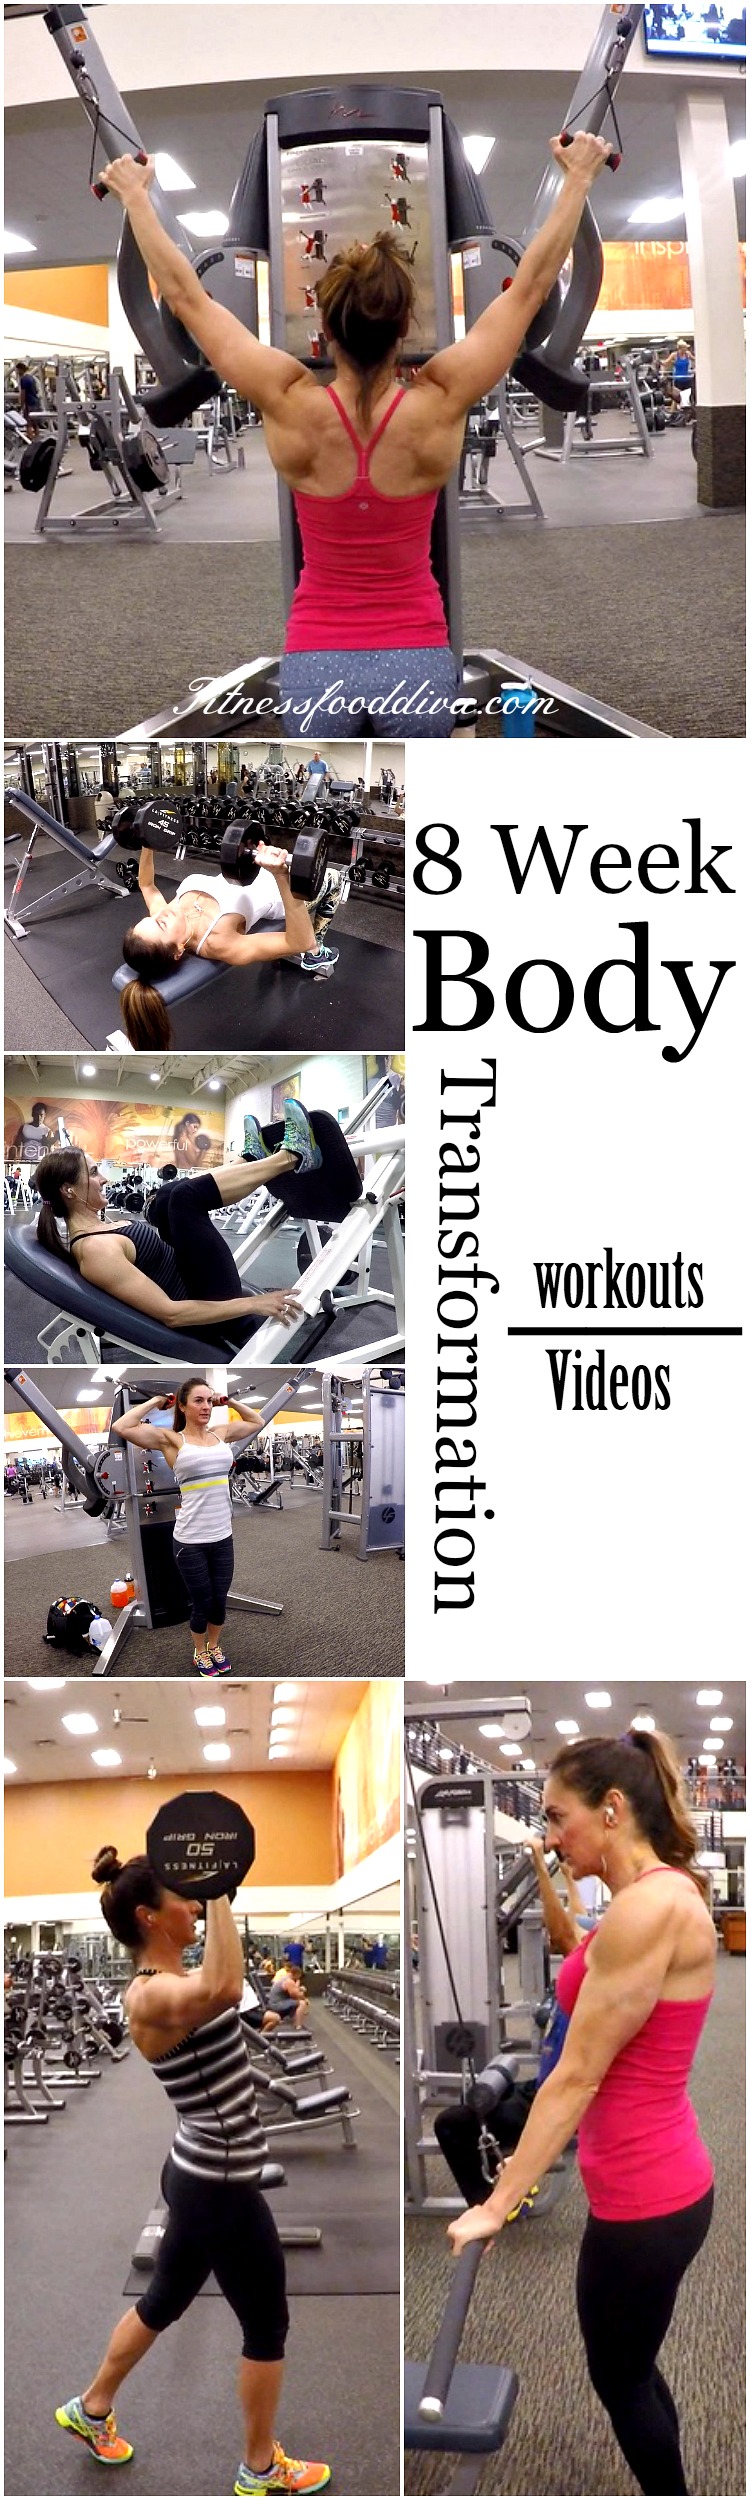 8_week_body_program